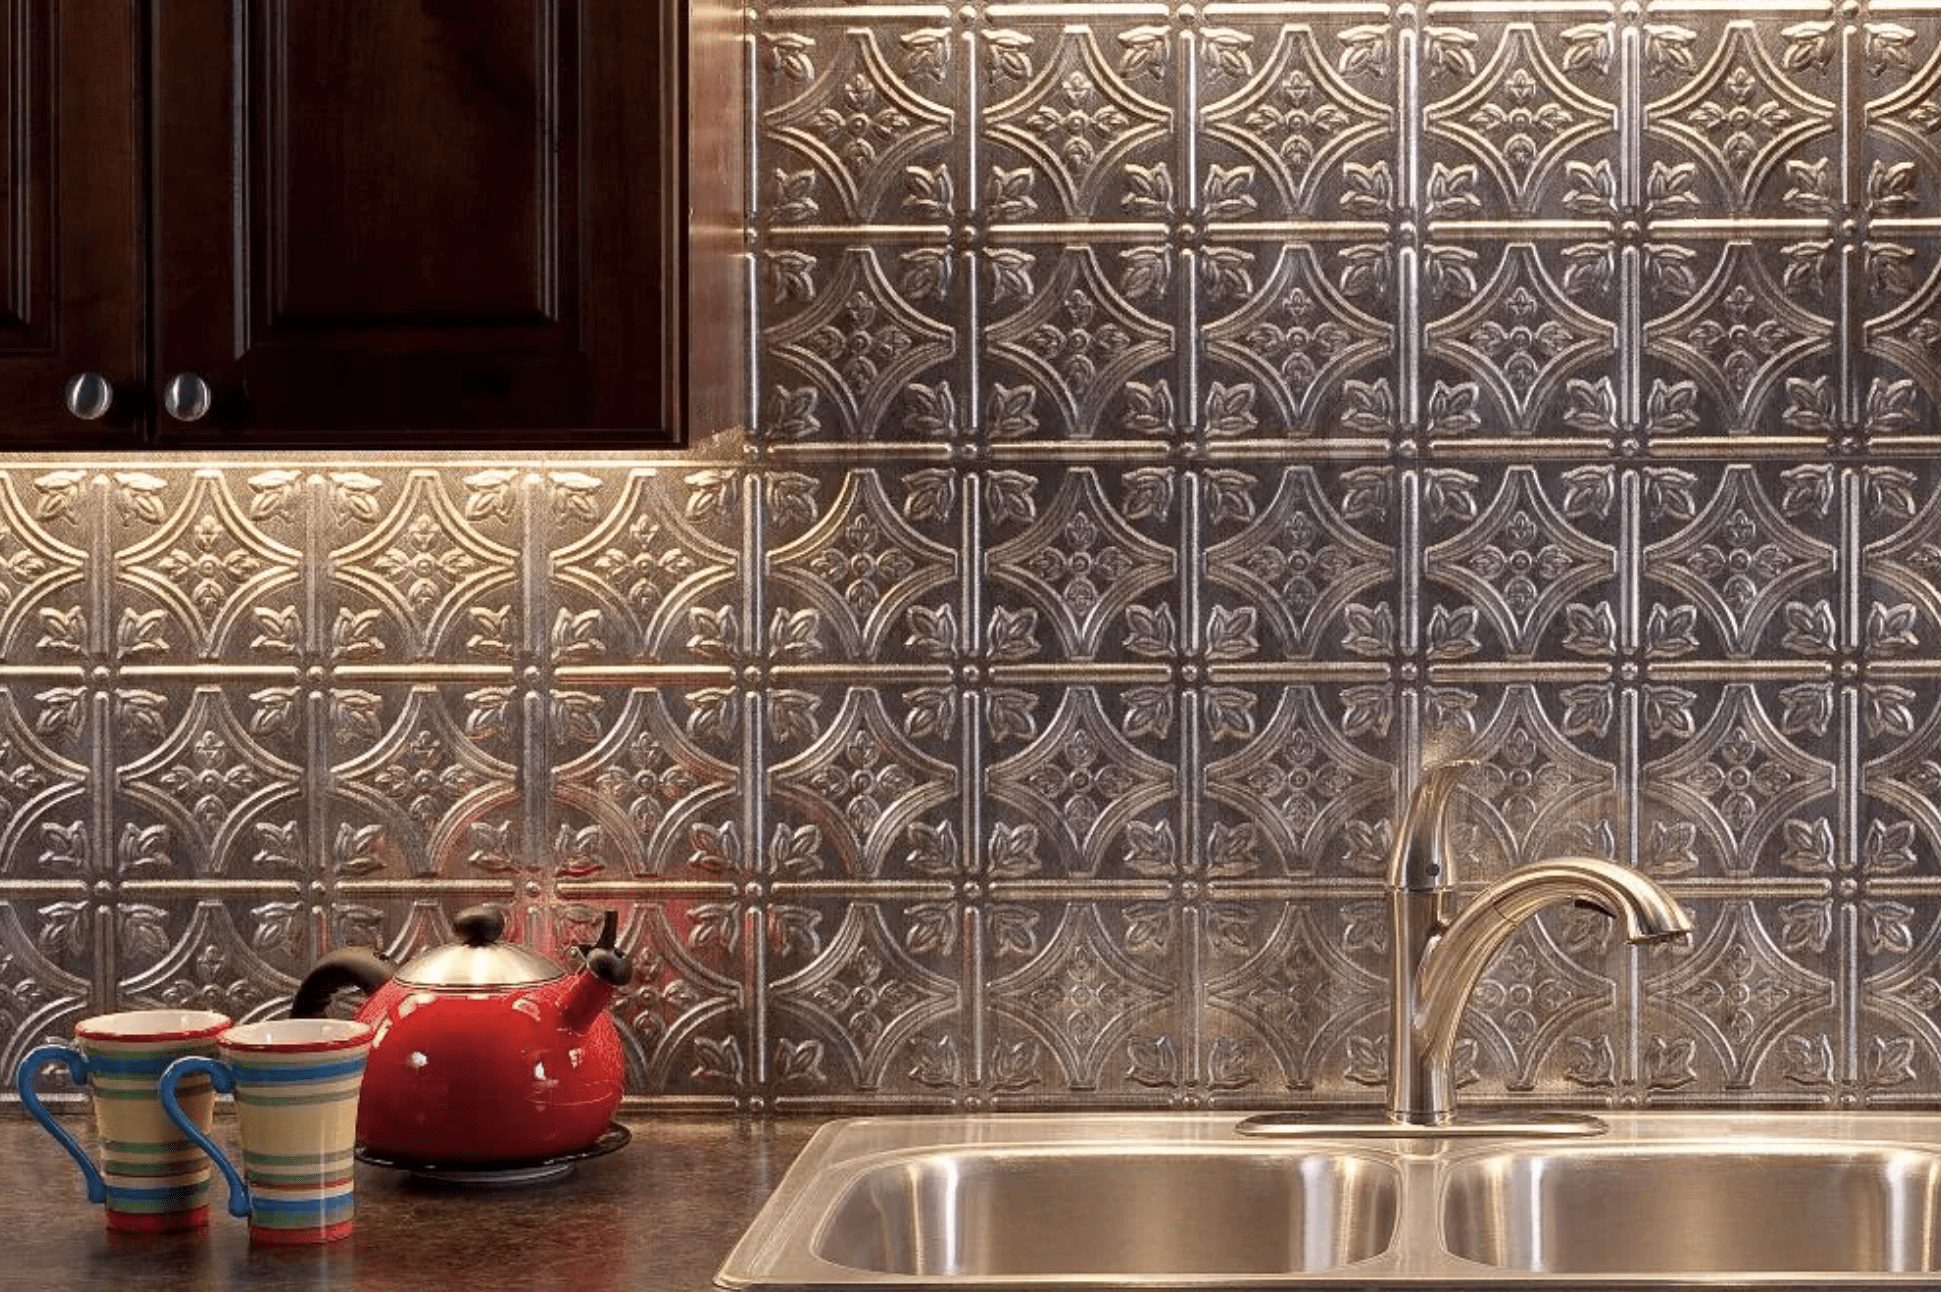 kitchen backsplash options with tile